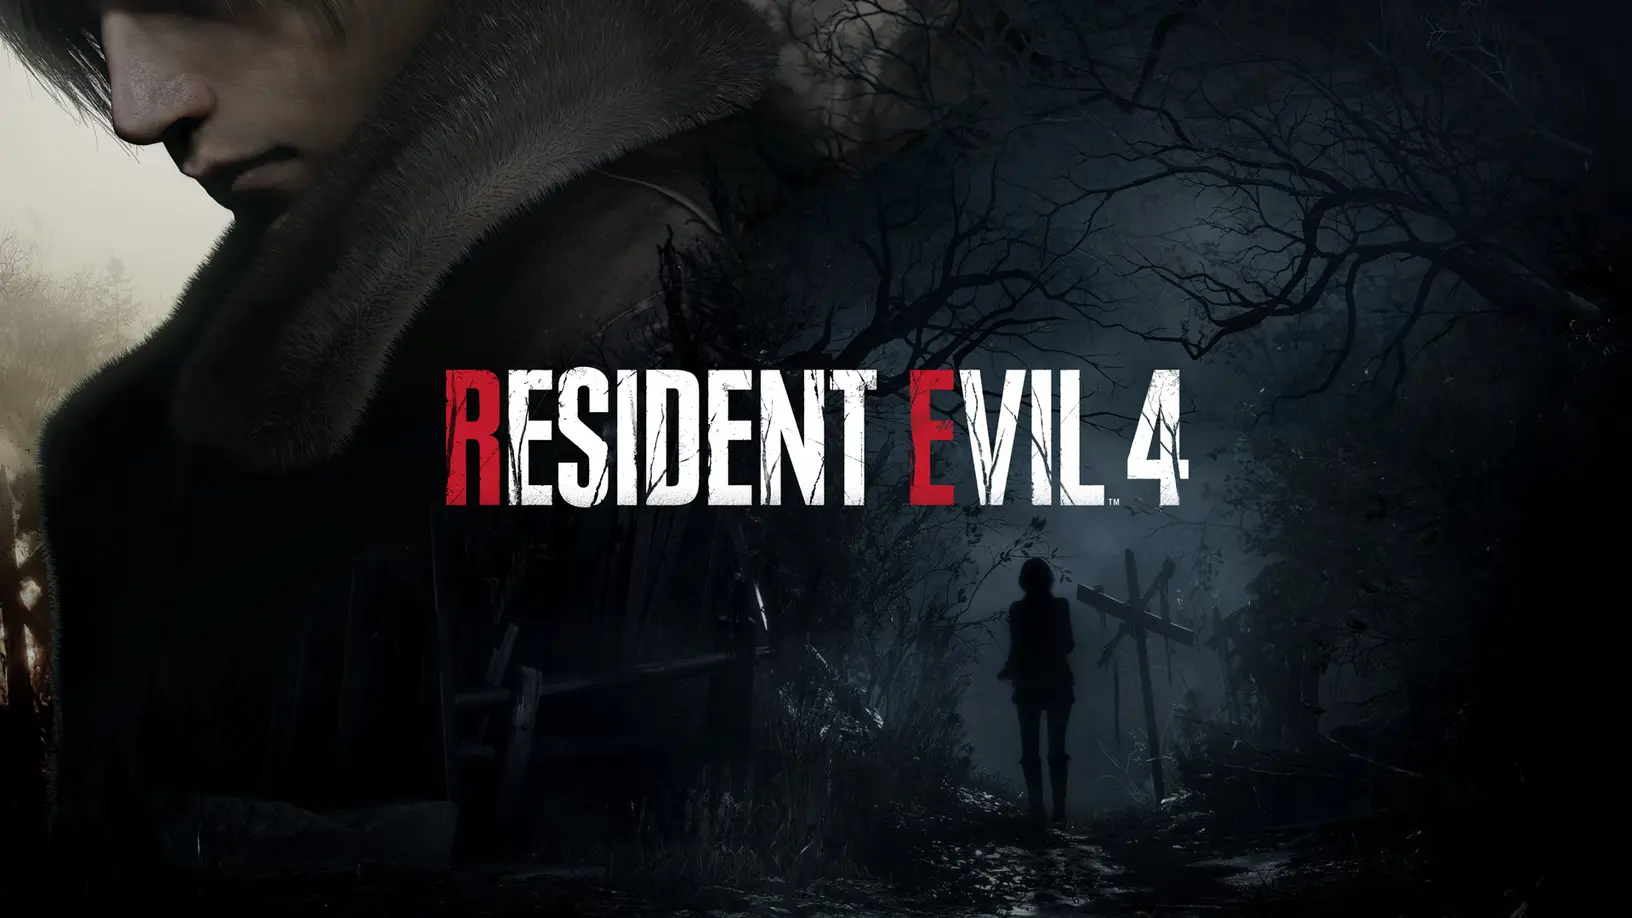 Imagem para Resident Evil 4 mudará a história, mas manterá a essência do original